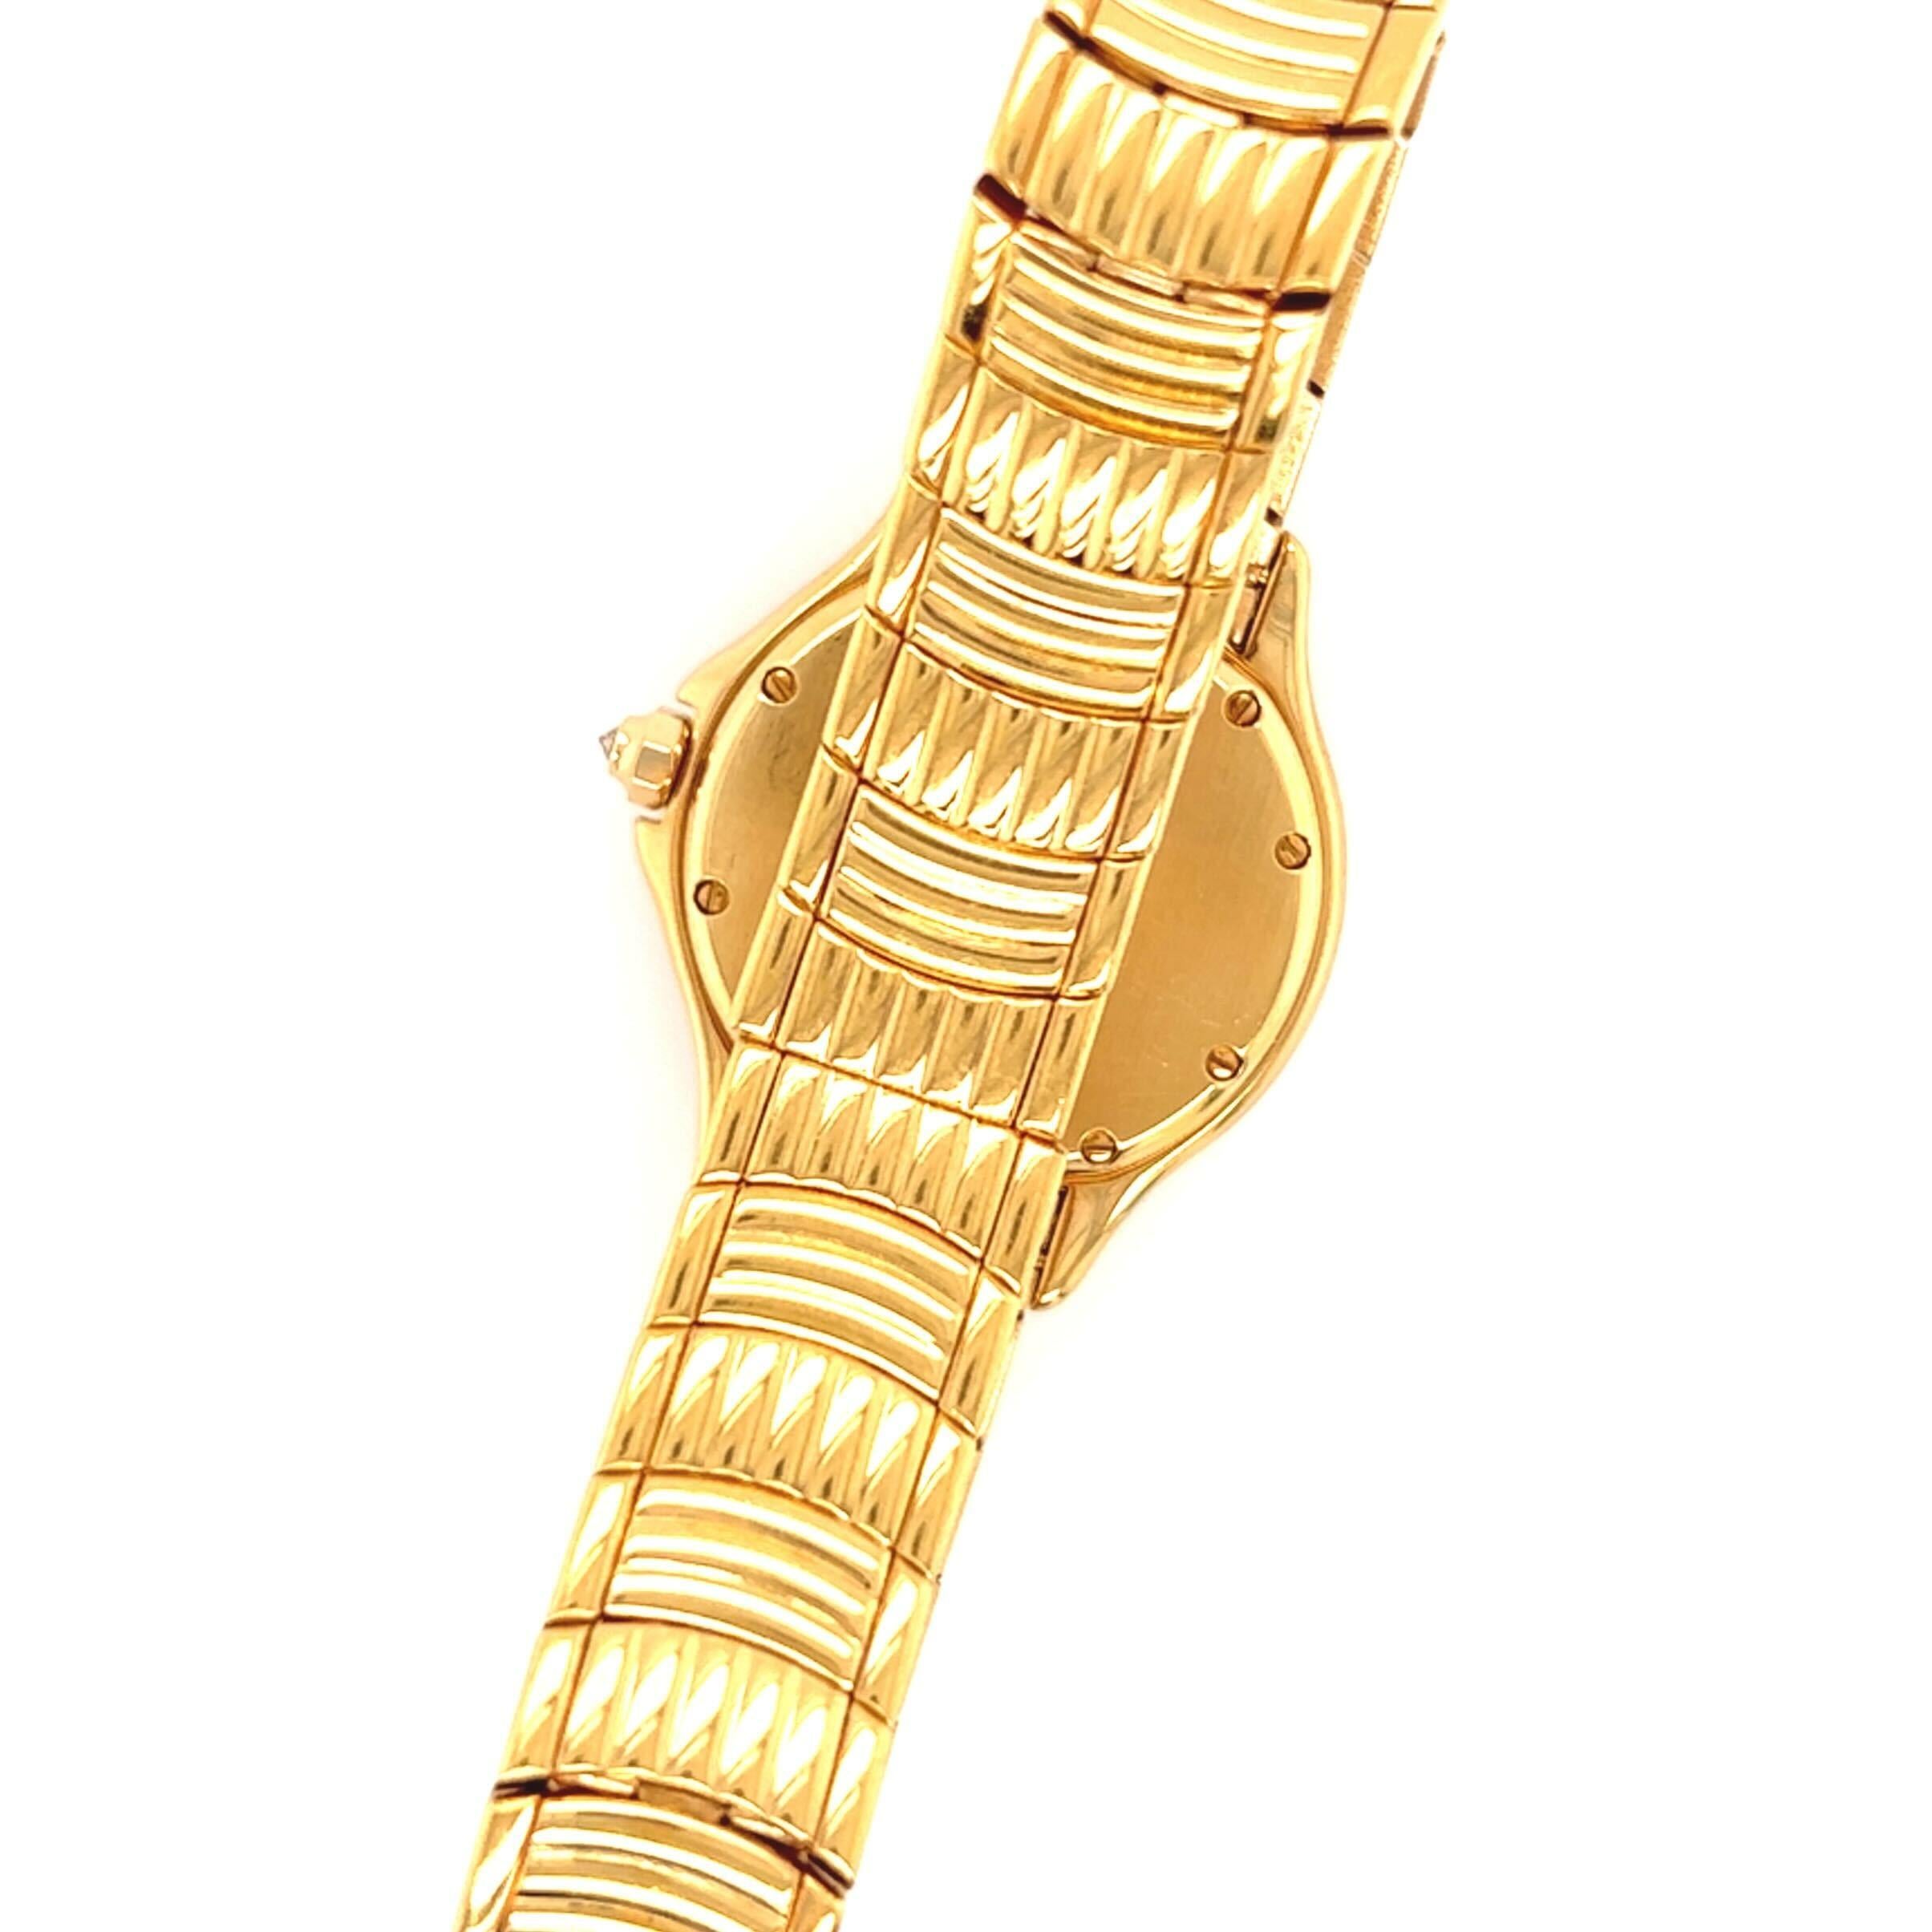 cartier 18 karat gold watch